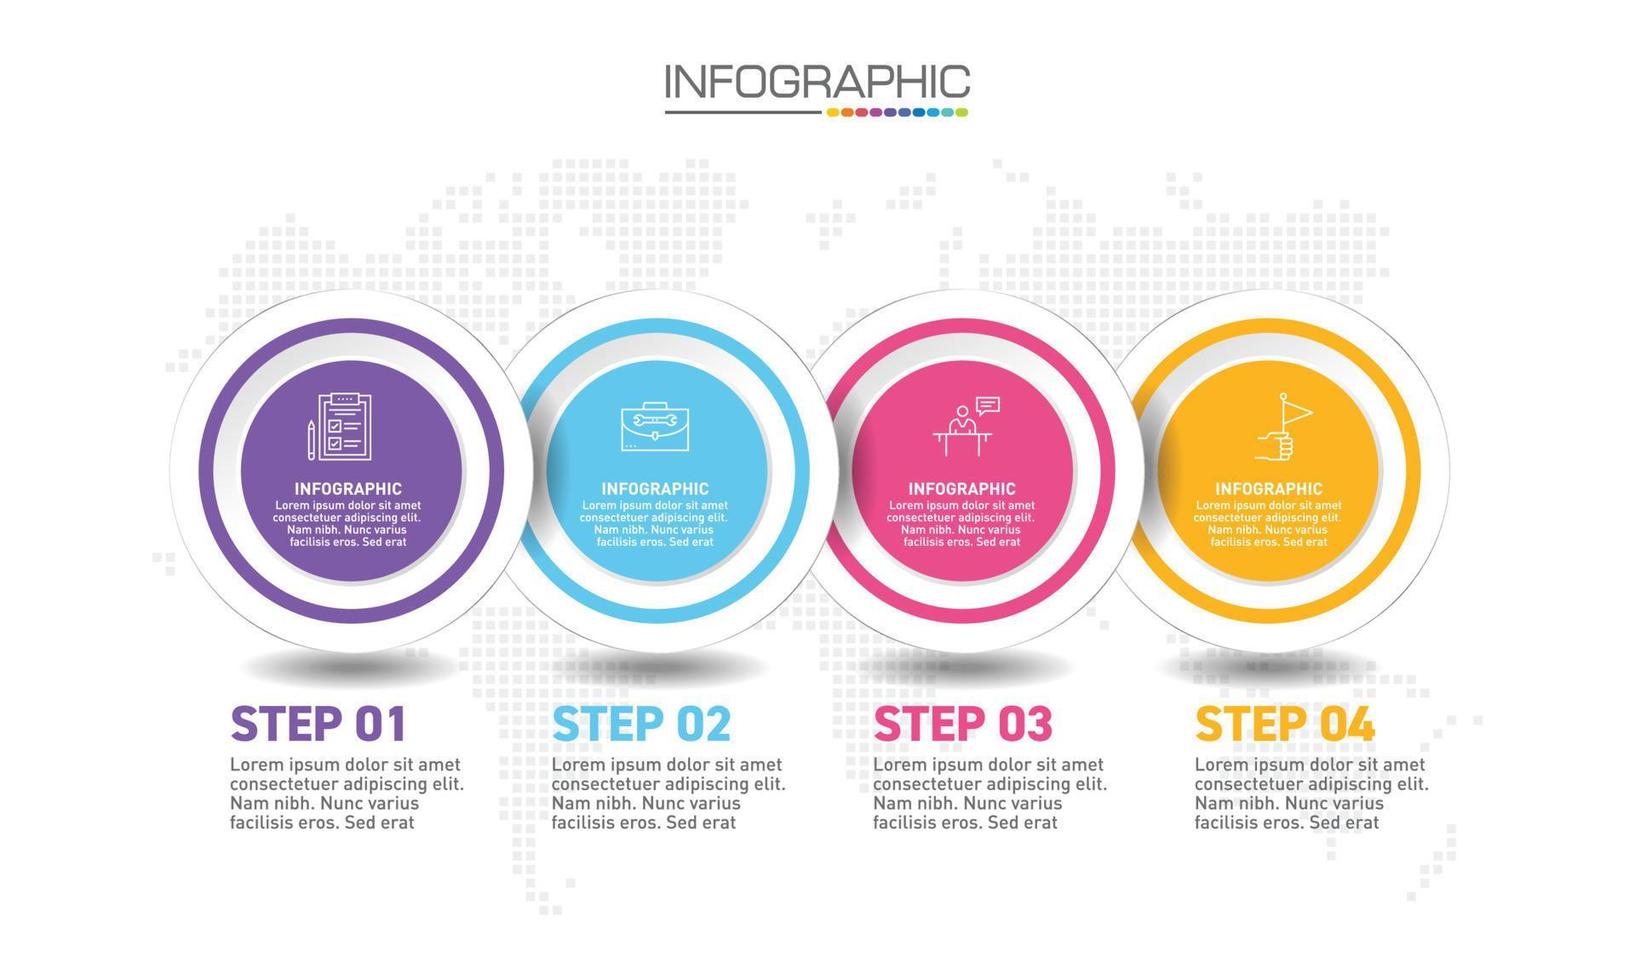 progettazione infografica 4 passaggi con icone di marketing possono essere utilizzati per layout del flusso di lavoro, diagramma, relazione annuale, web design. vettore